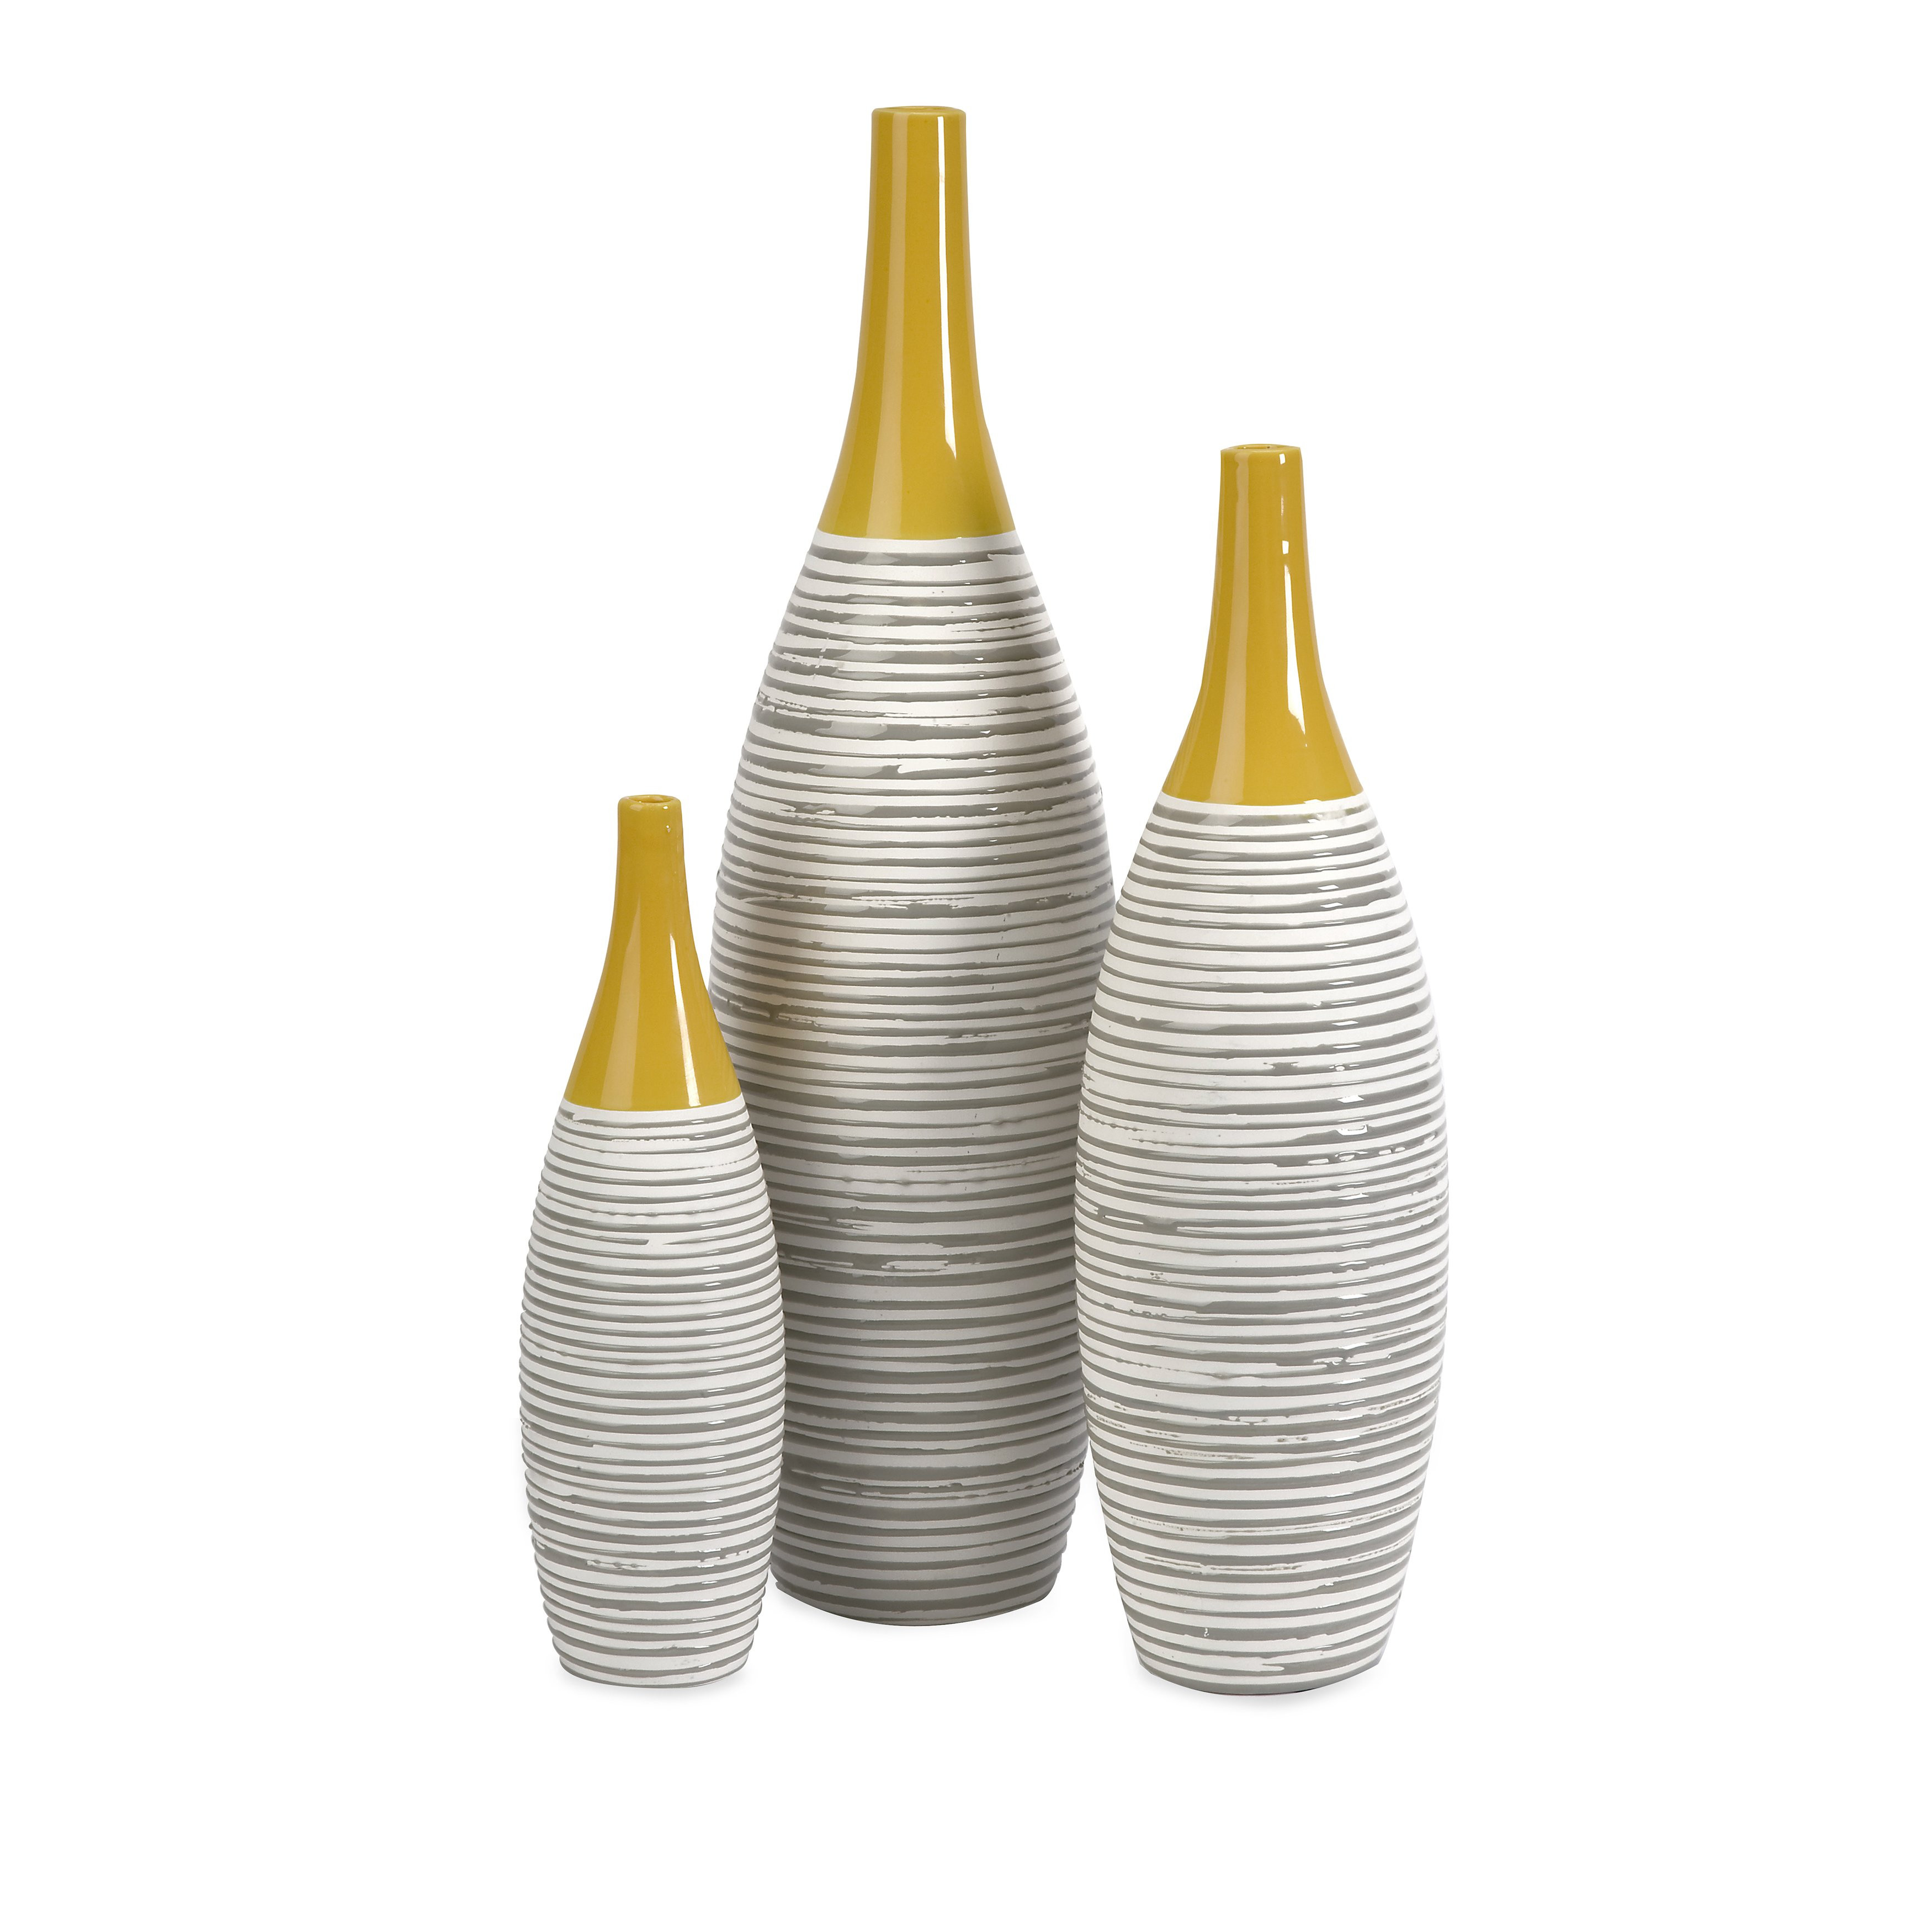 24 Wonderful Imax Agatha Ceramic Vases Set Of 3 2024 free download imax agatha ceramic vases set of 3 of shop andean multi glaze vases set of 3 free shipping on orders inside andean multi glaze vases set of 3